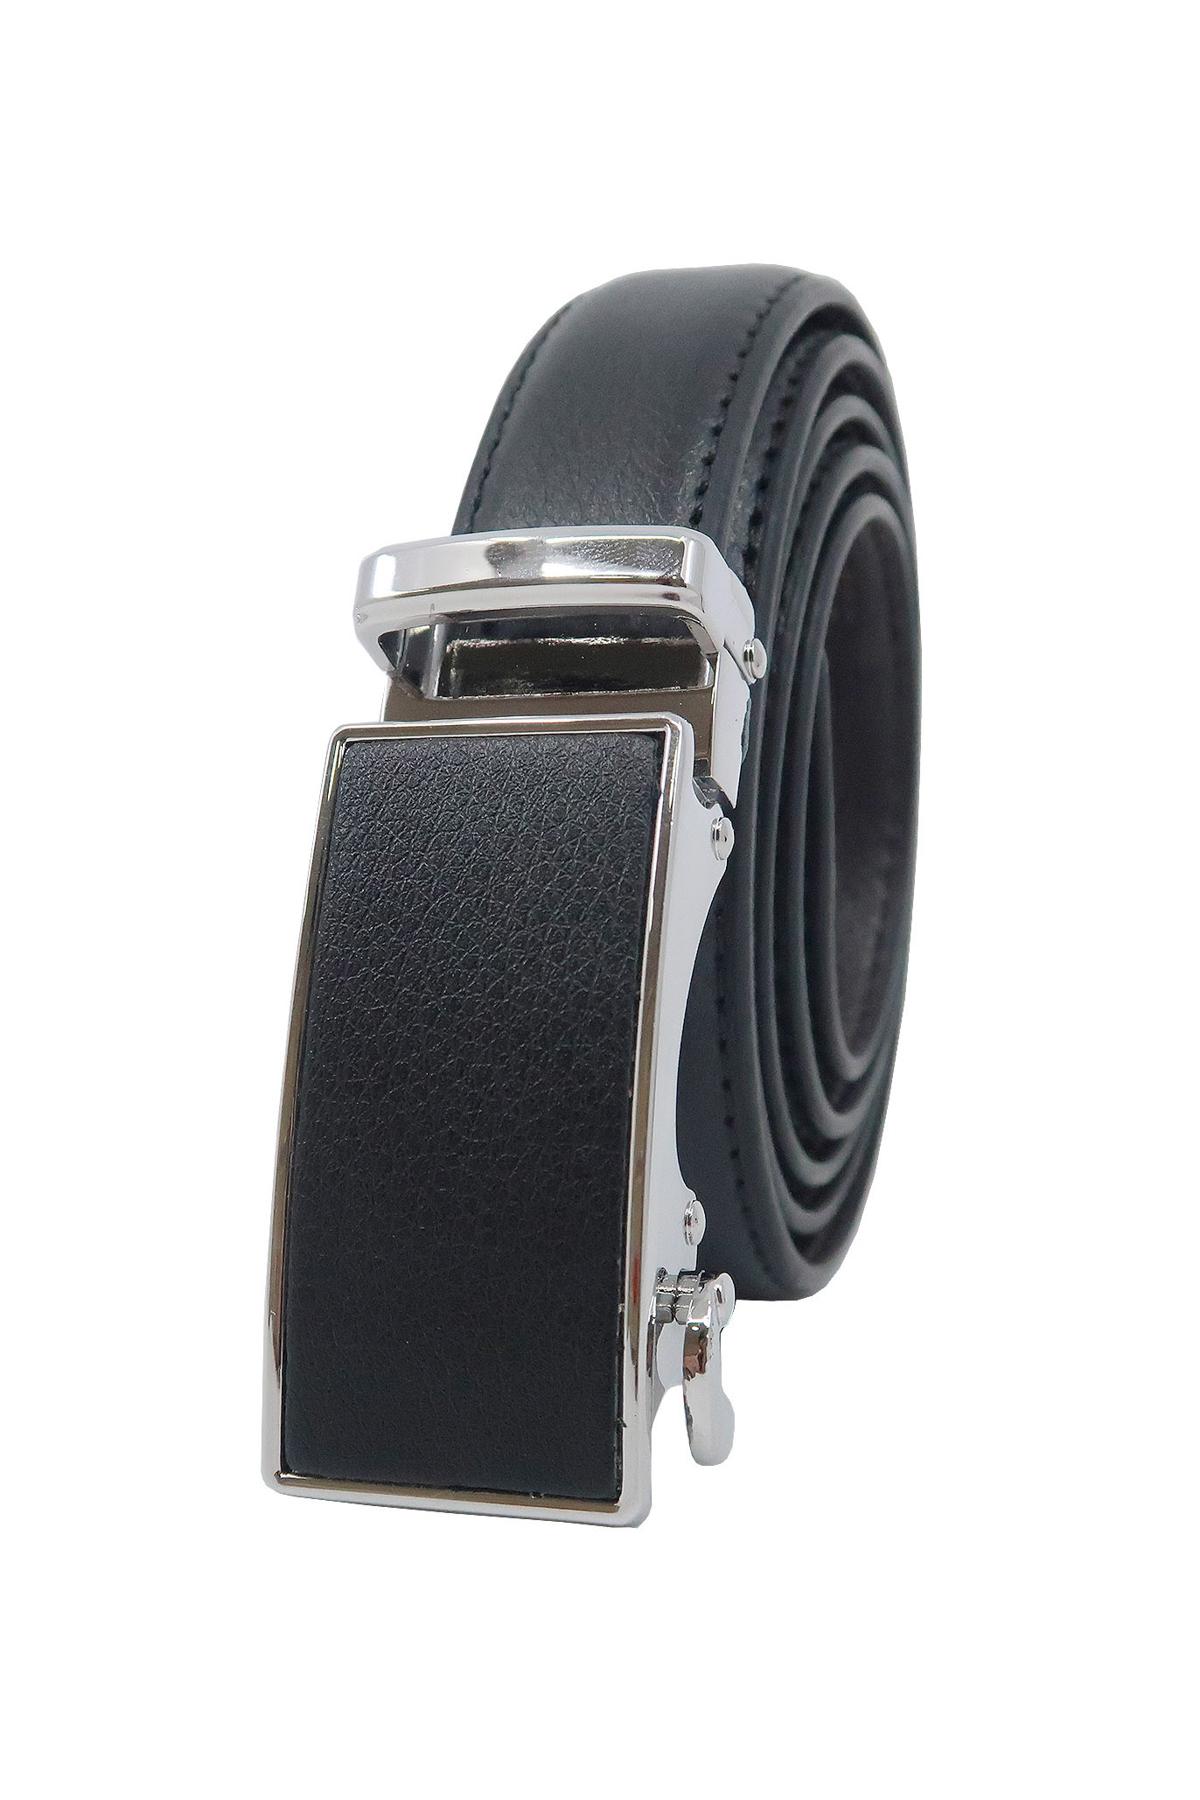 Cinturones Complementos Black JCL AU25-225 #c Efashion Paris